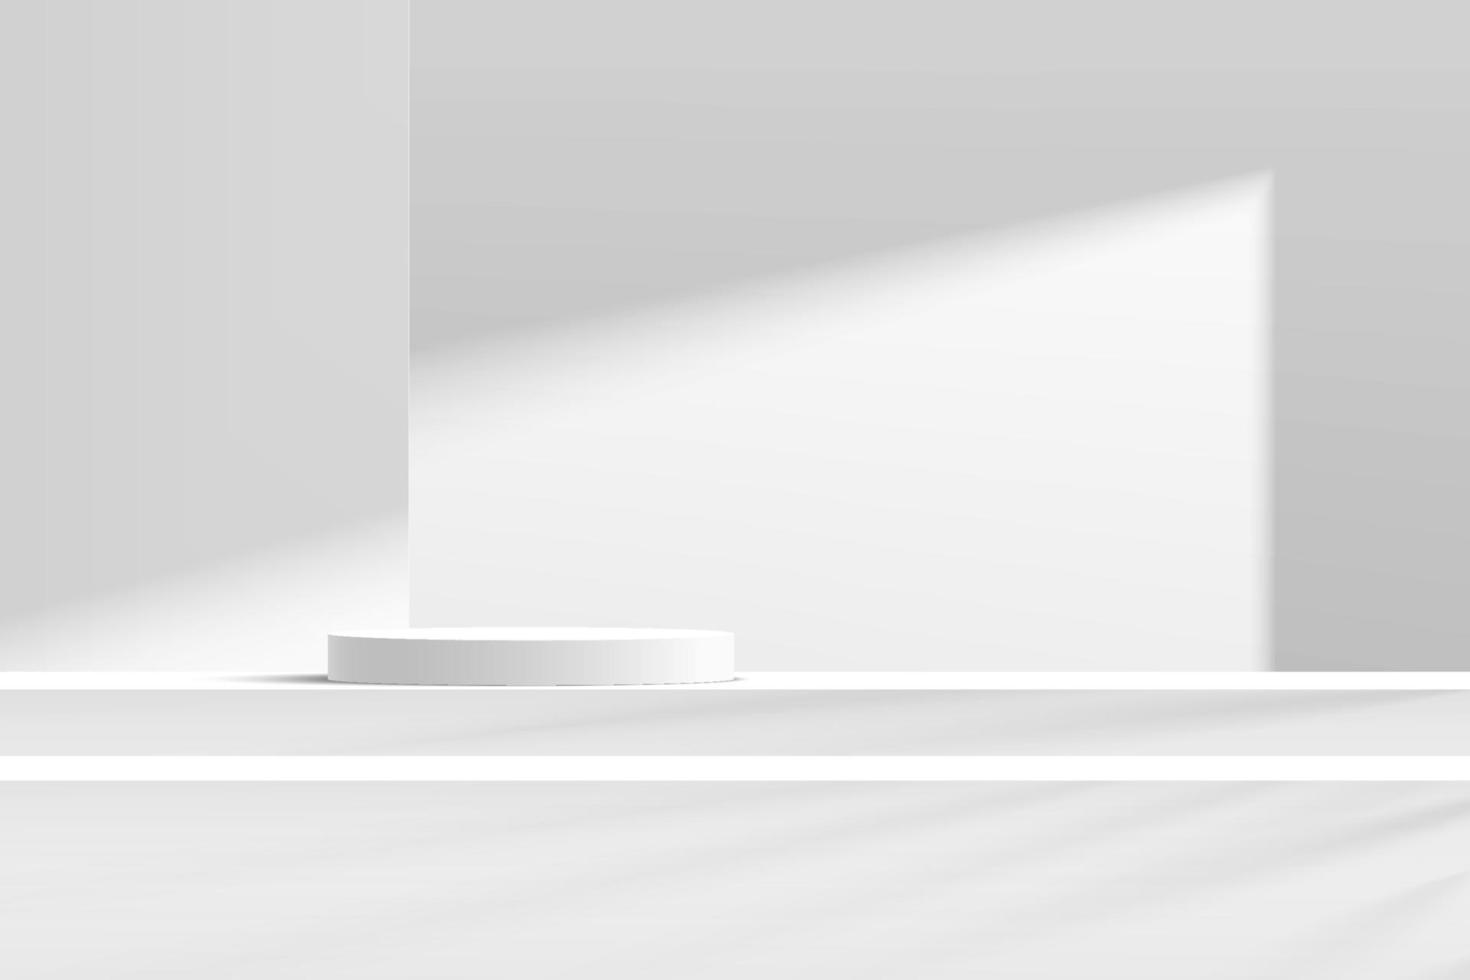 abstract 3d wit en grijs cilinder voetstuk podium op de trap tafel met witte muurscène in schaduw. moderne vector rendering geometrisch platform voor cosmetische product display presentatie.